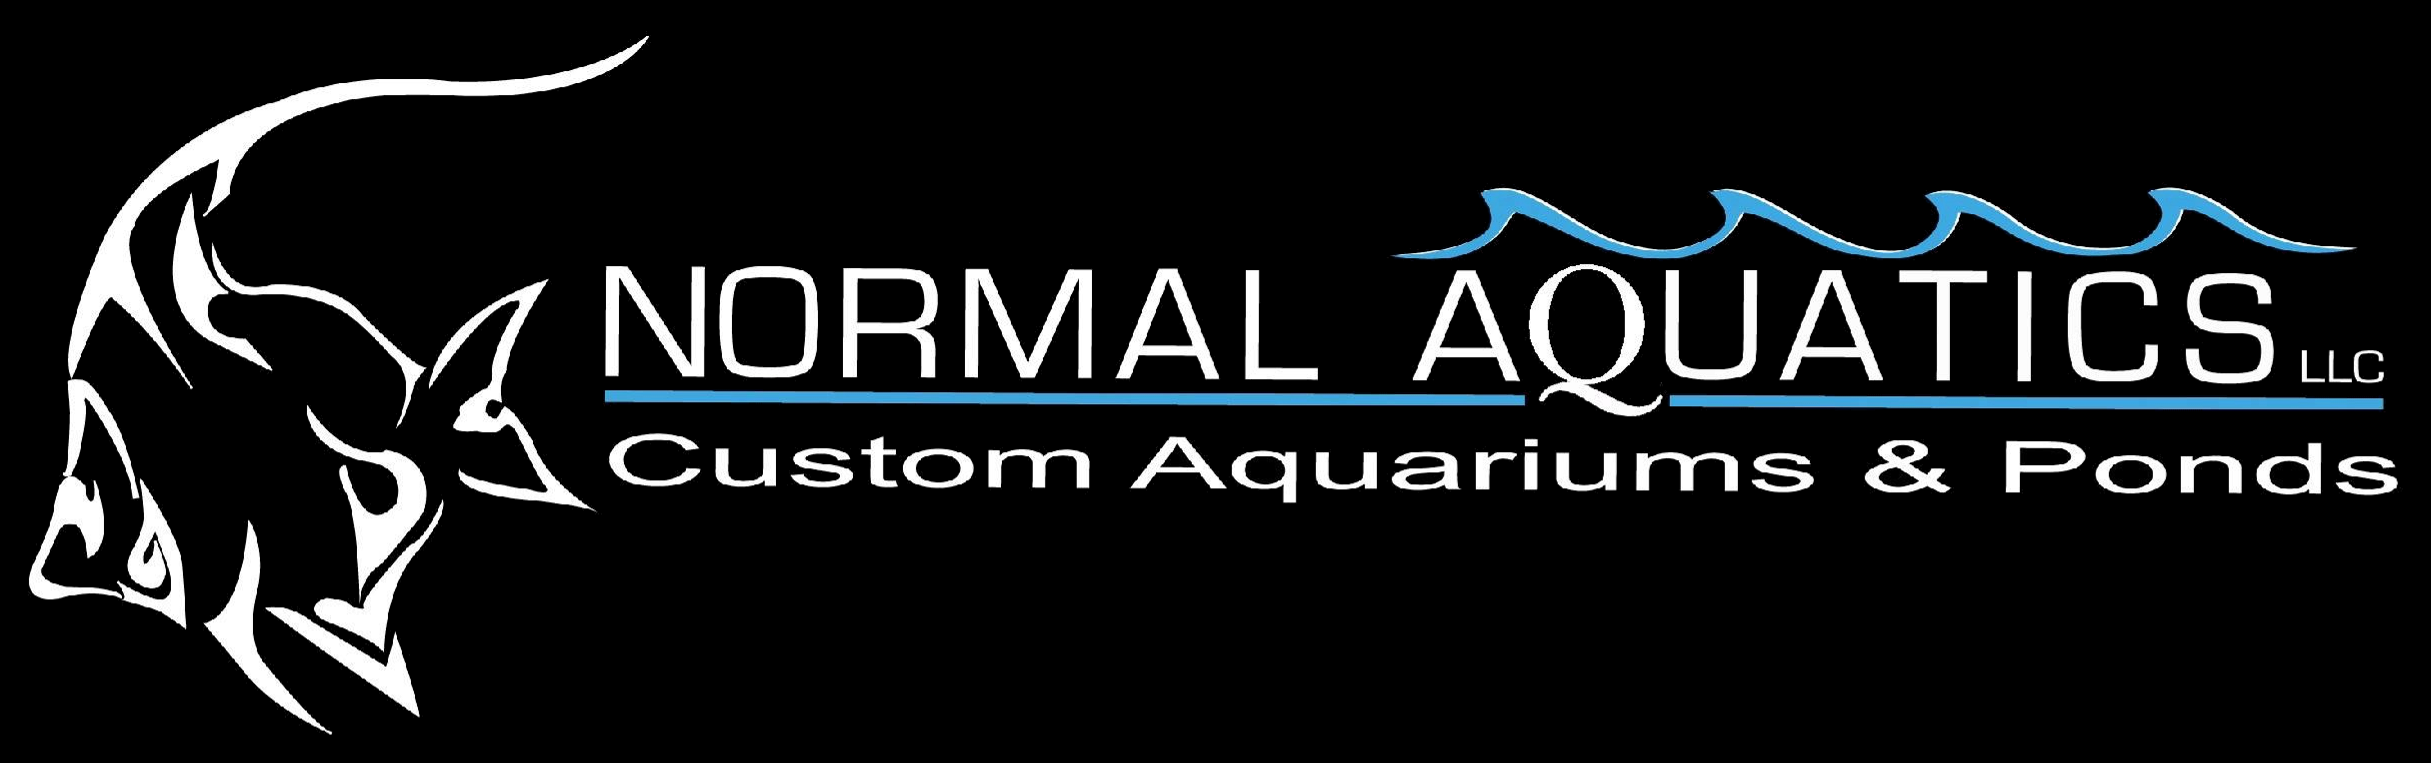 Normal Aquatics - Custom Aquariums & Ponds Install, Maintenance & Repair CT, NY